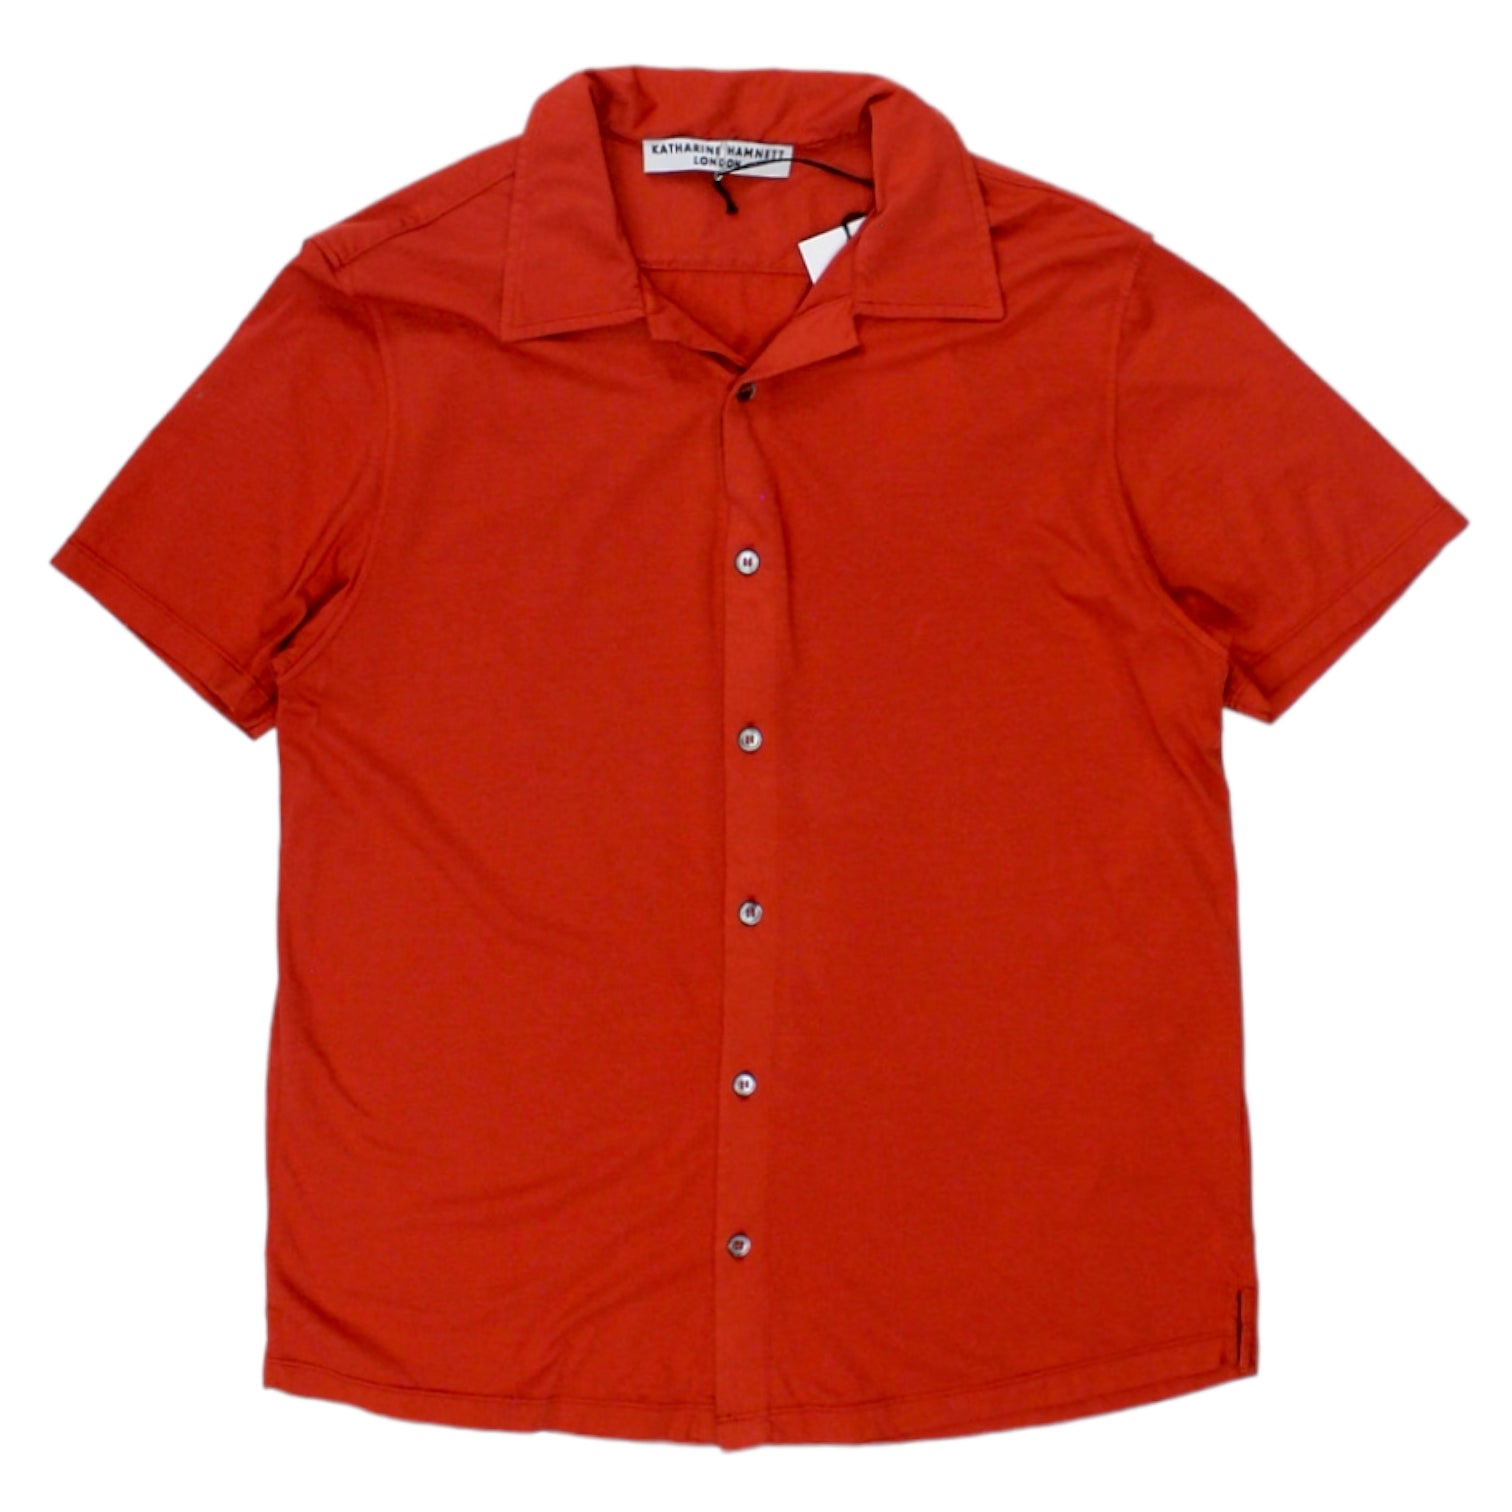 Katherine Hamnett Red Jersey Shirt